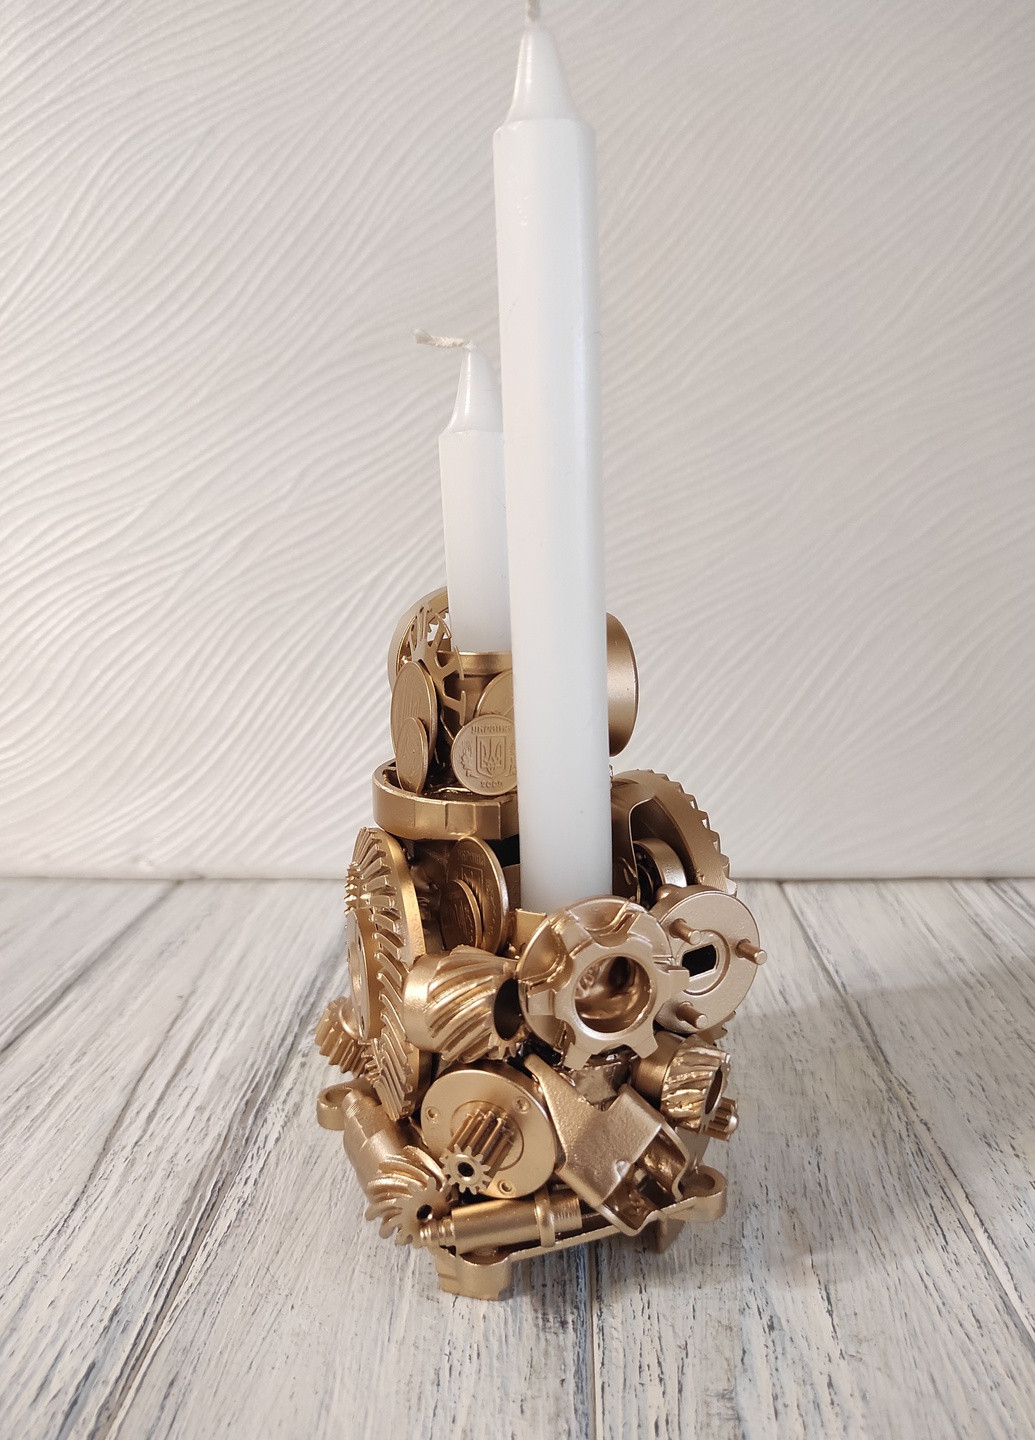 Сувенір підсвічник свічник стімпанк з металу з золотим напиленням ручна робота хендмейд подарунок SuvenirPodarokZP 3 (256544336)